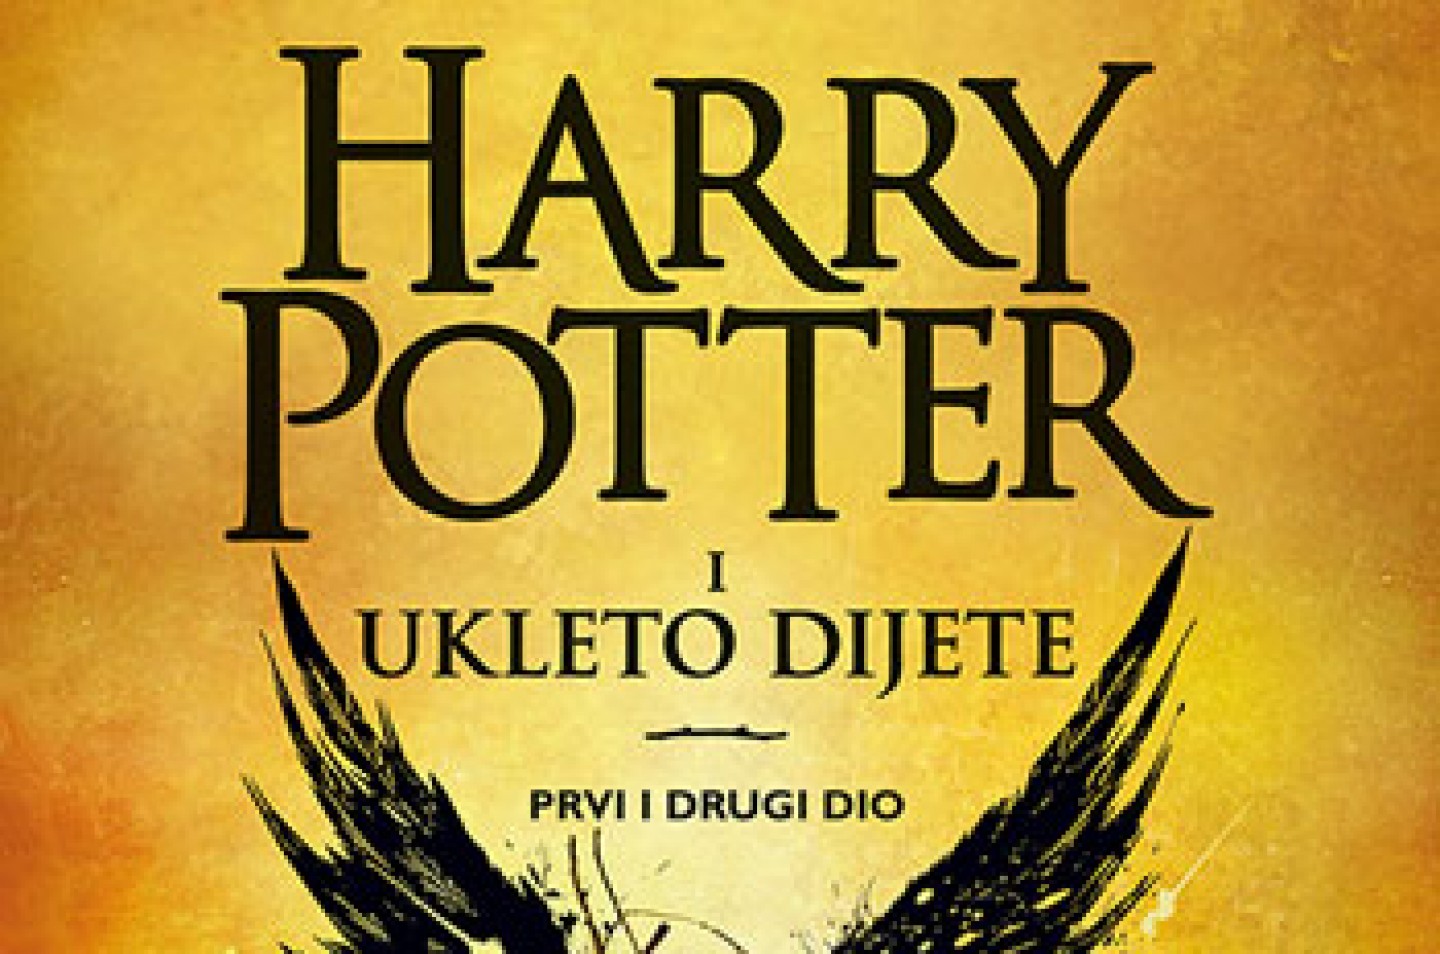 Okupljanje čitatelja Harryja Pottera povodom izlaska knjige Harry Potter i ukleto dijete